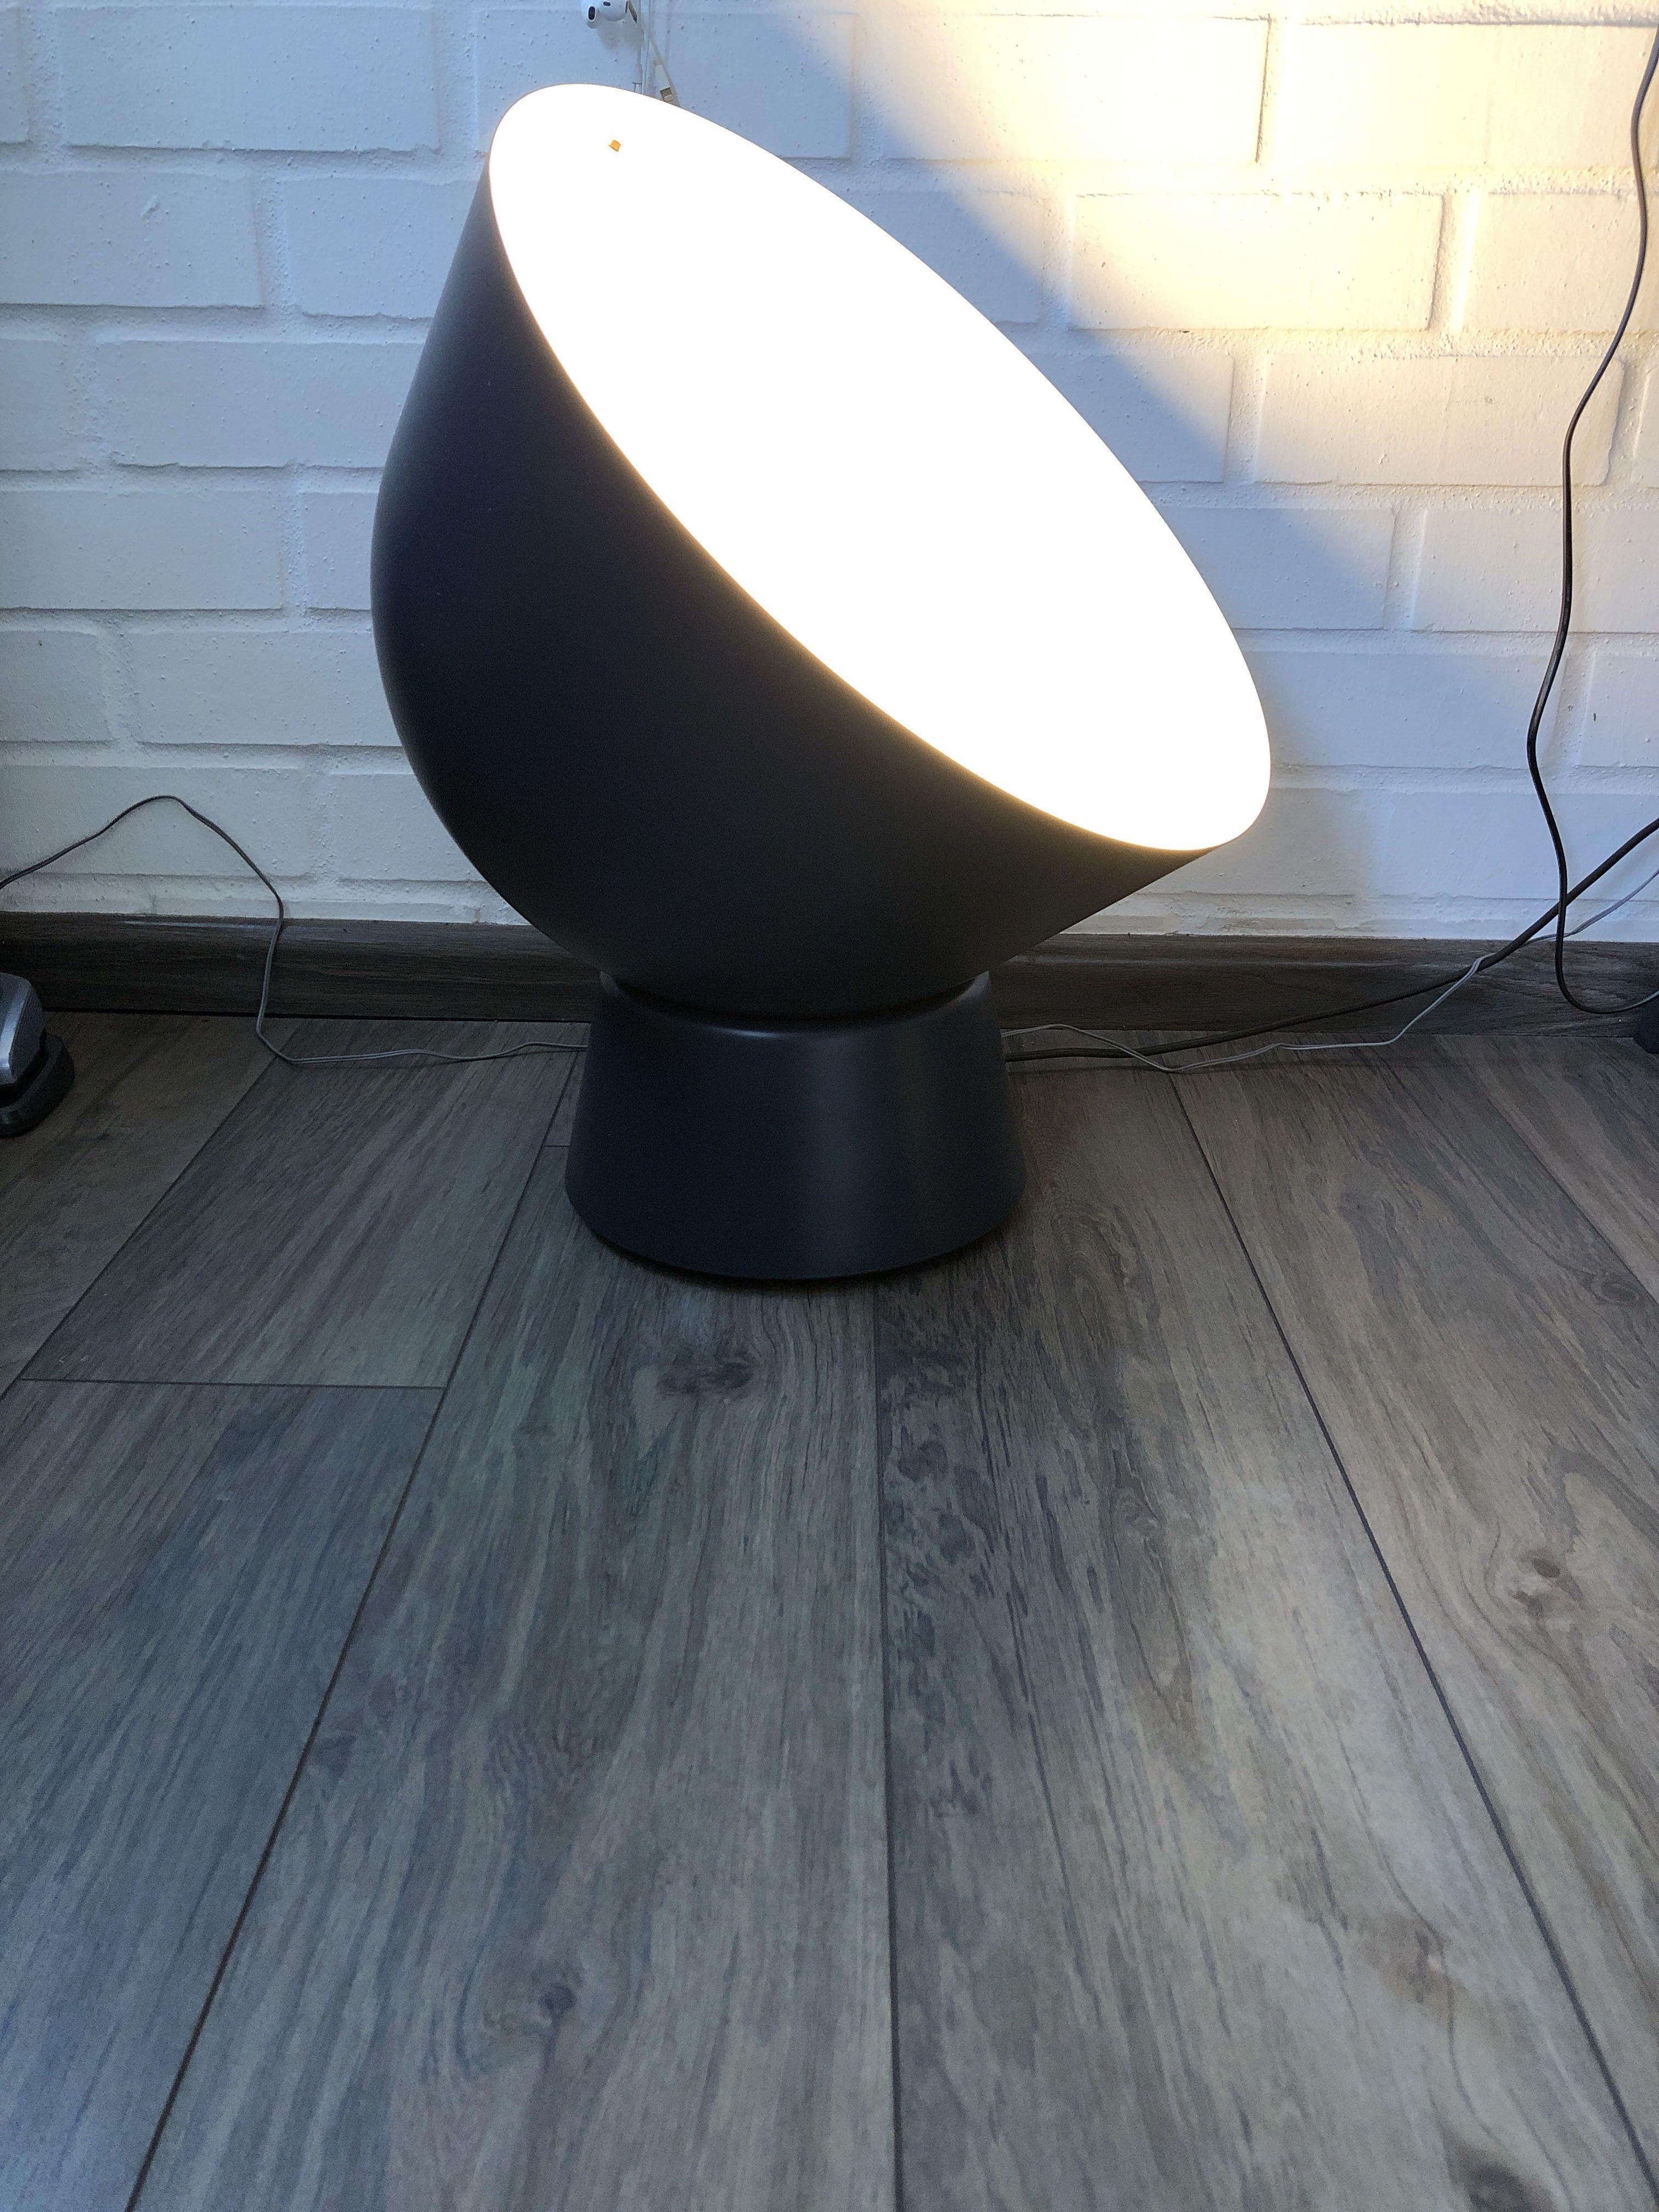 ikea ps 2017 floor lamp review